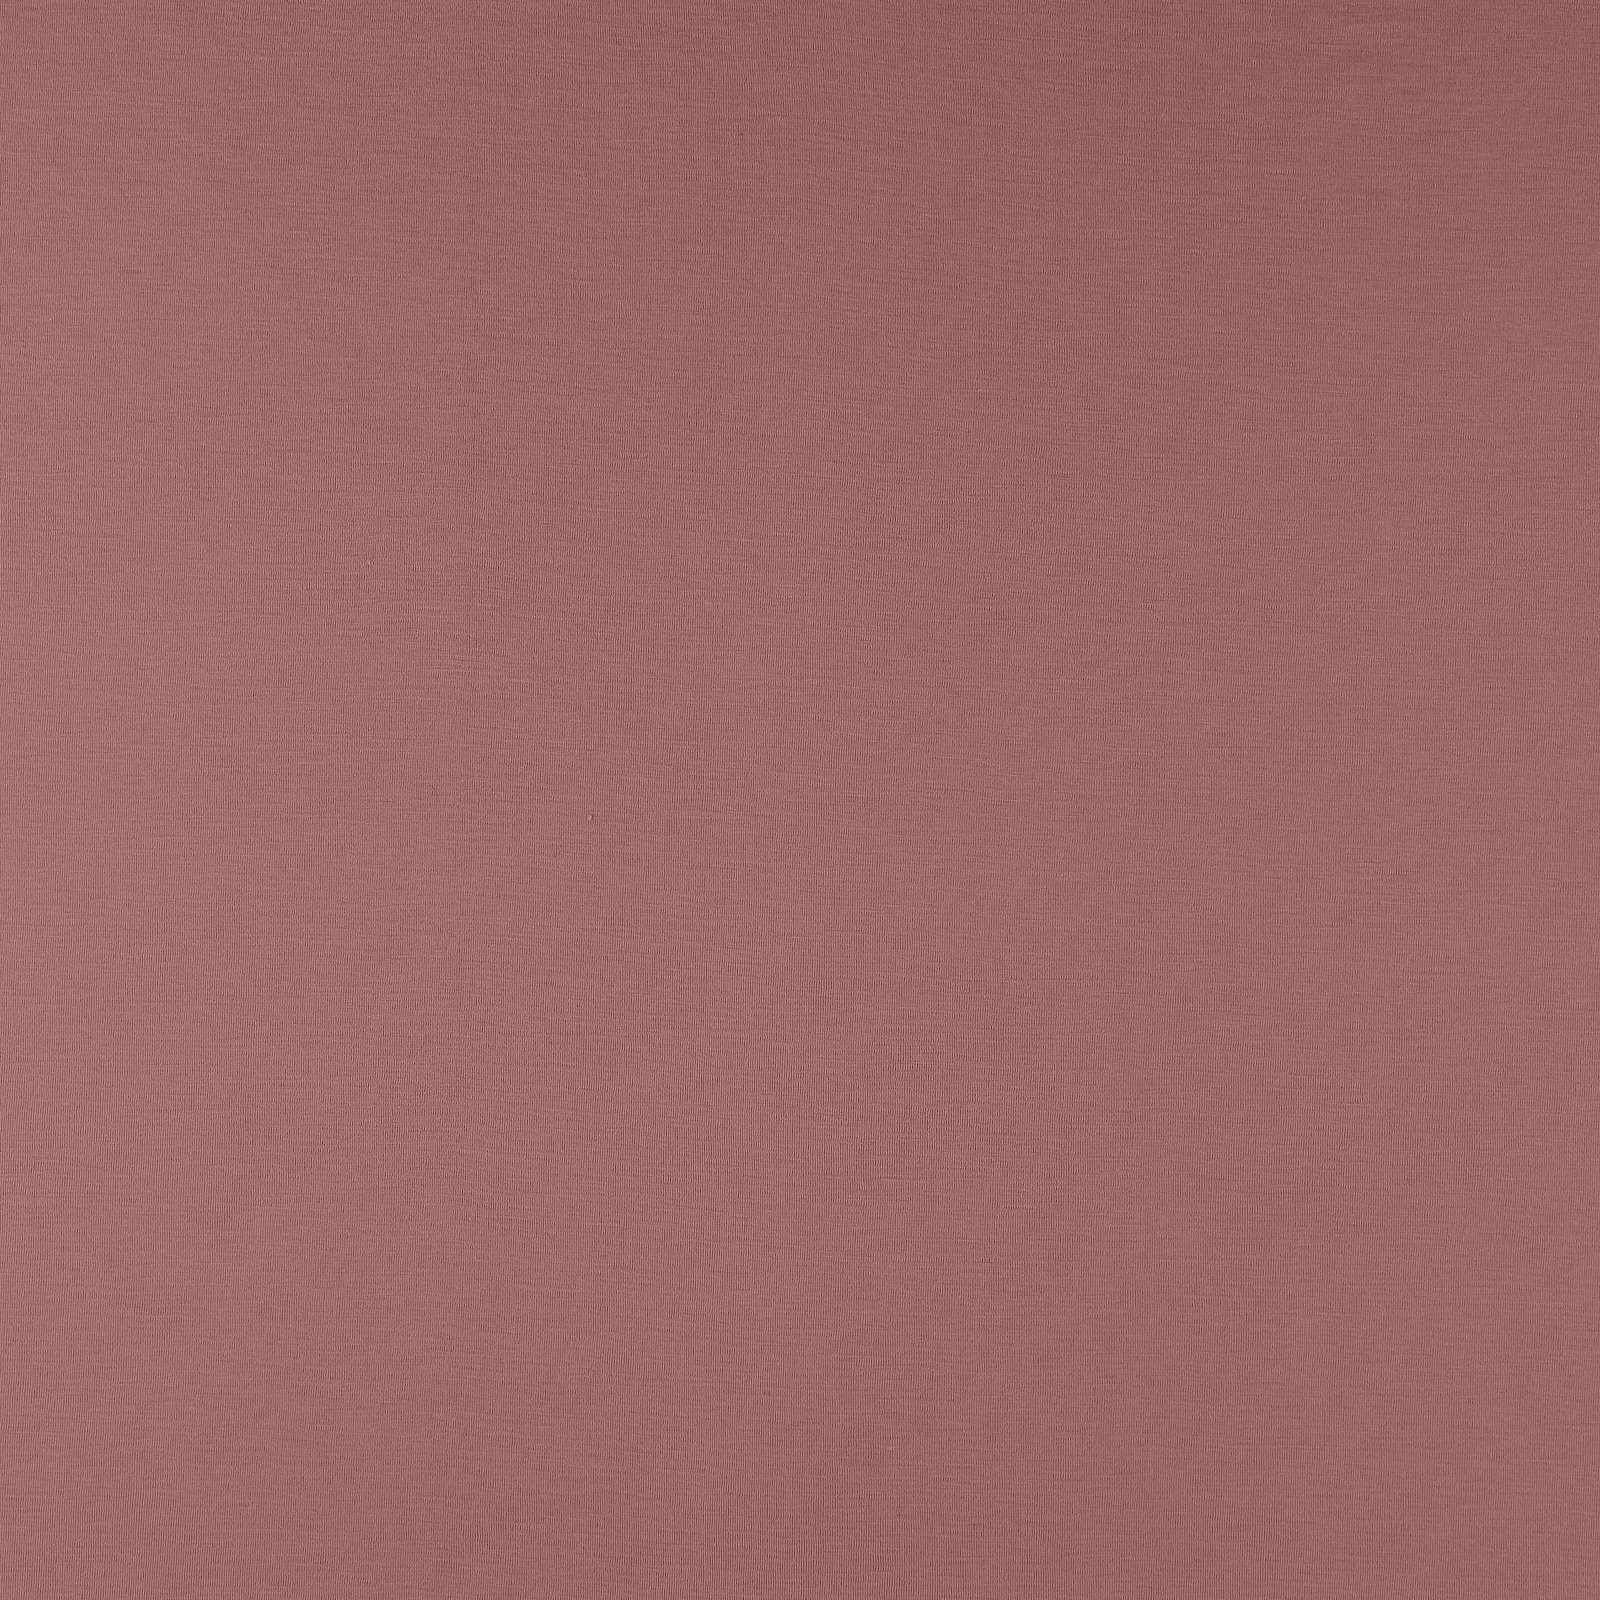 Uld/acryl jersey mørk gammel rosa 273547_pack_solid